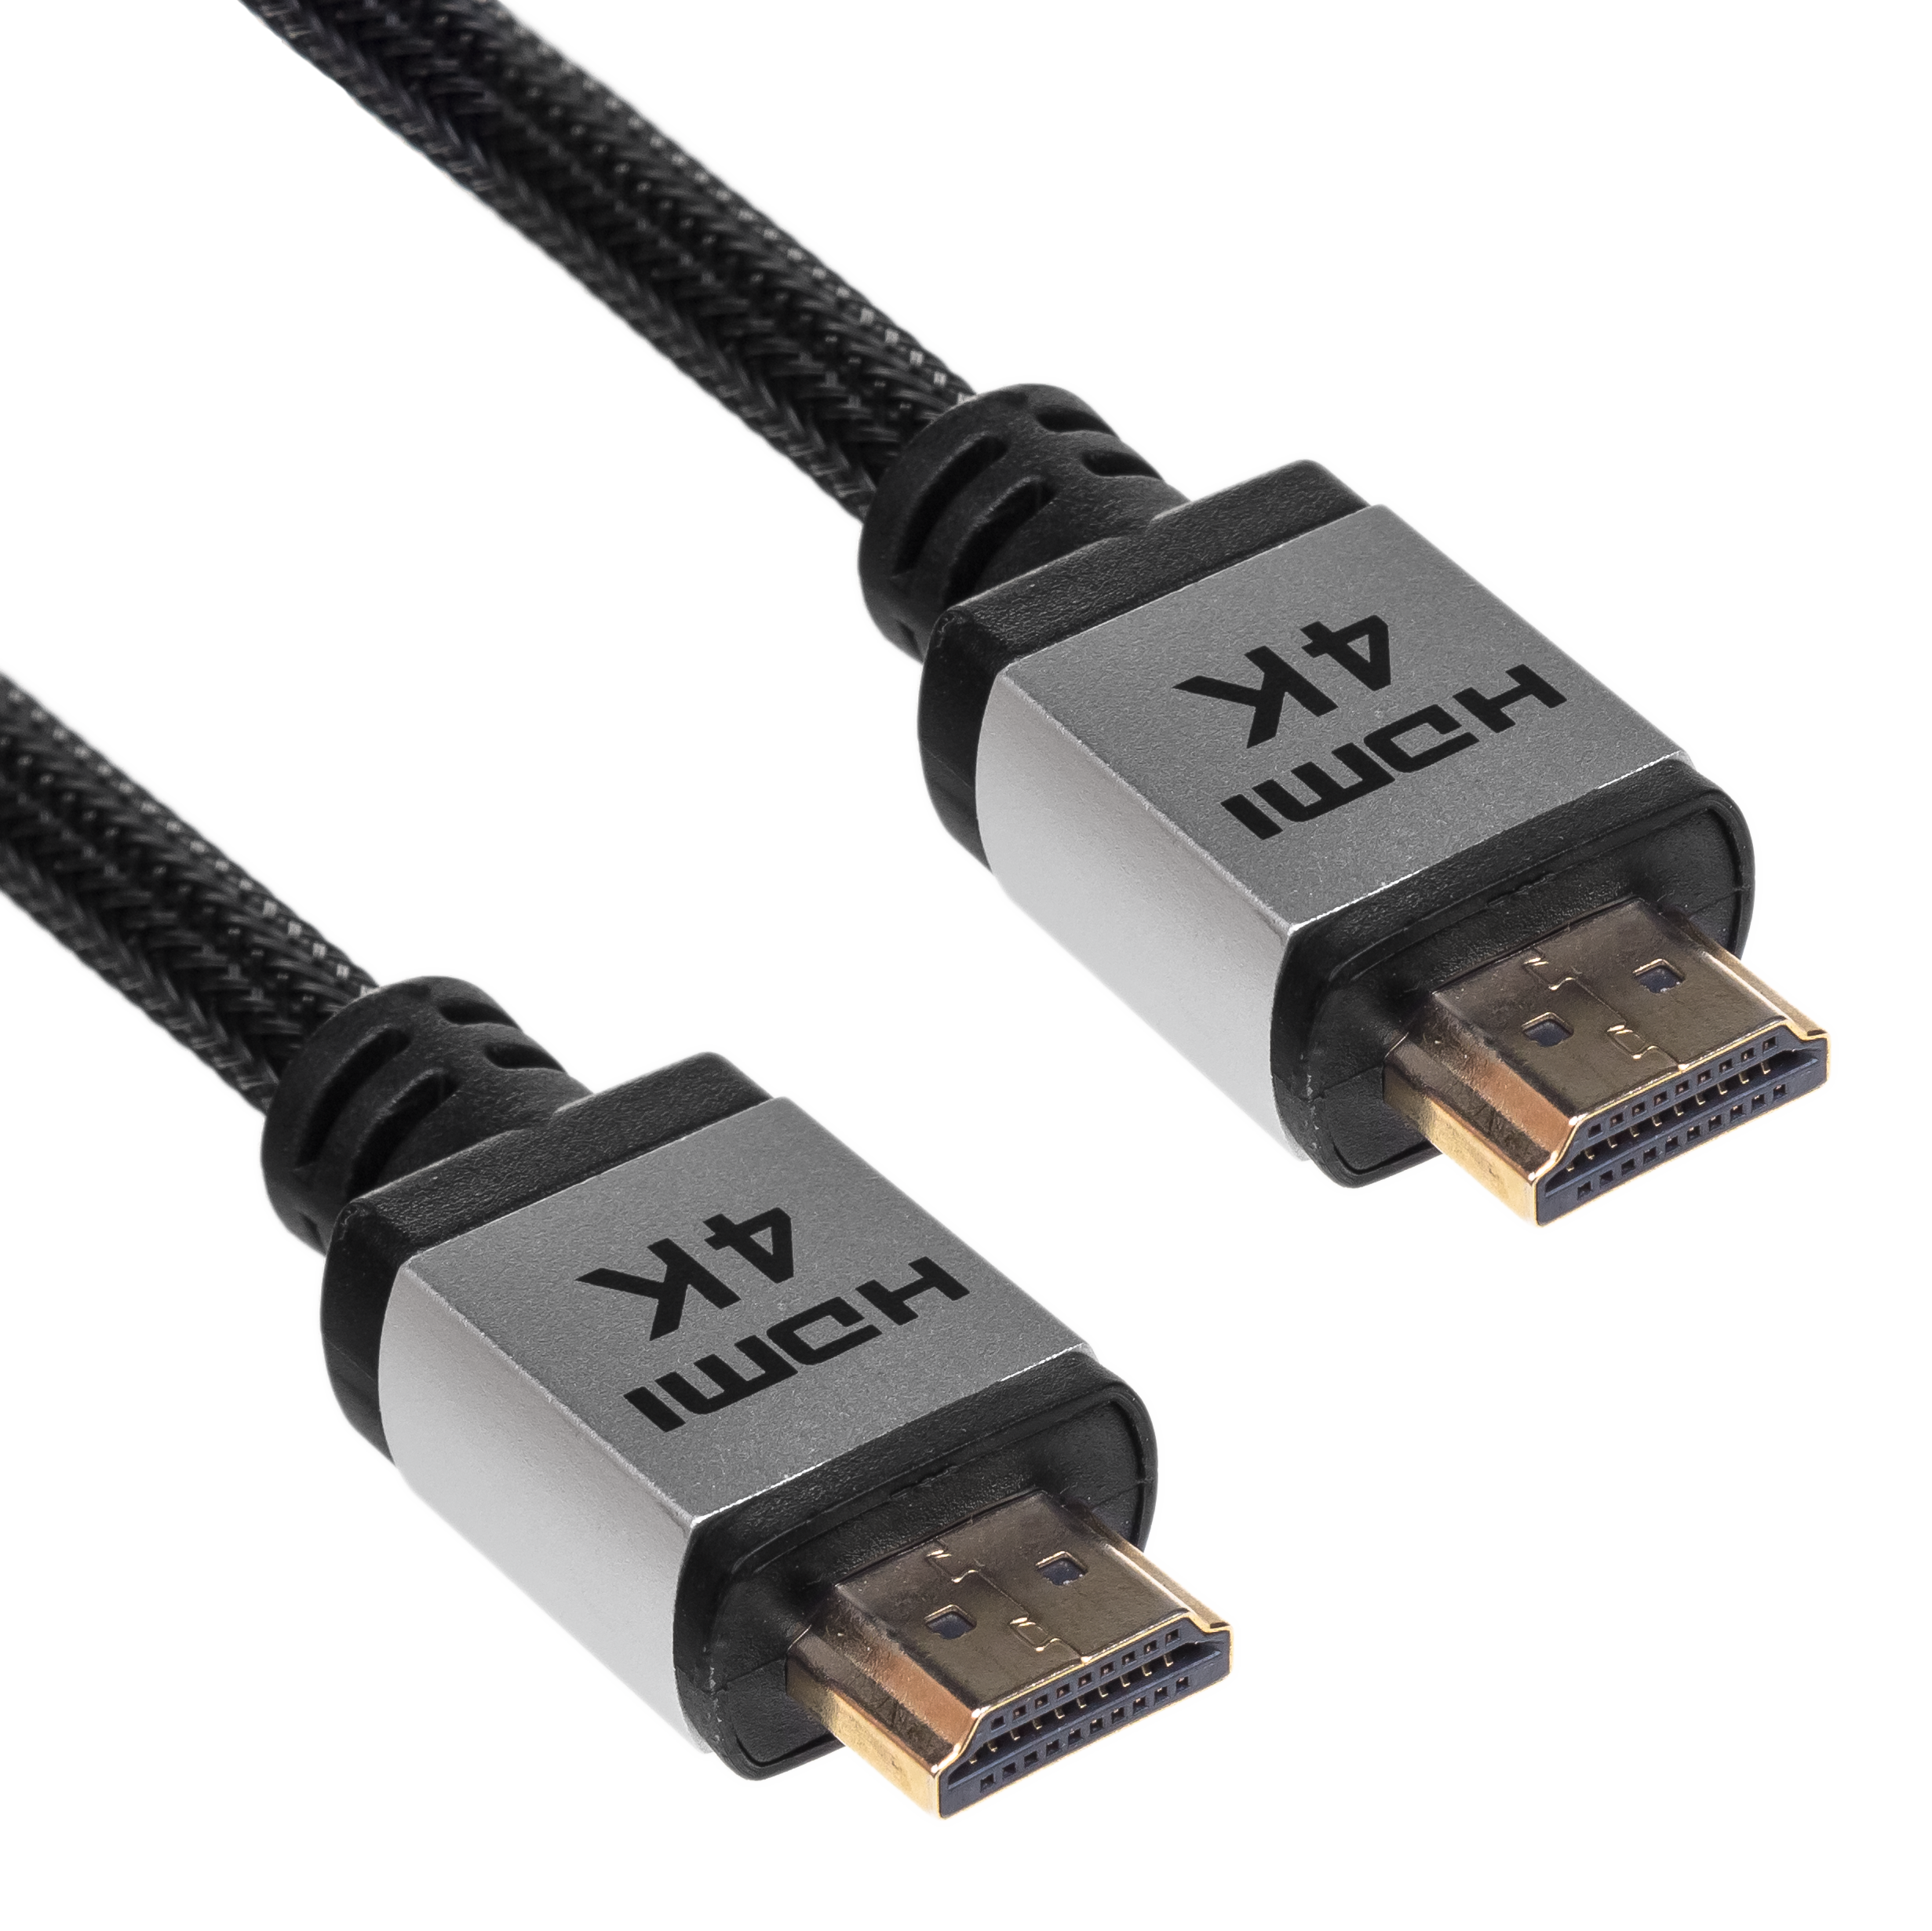 Cable HDMI 2.0 PRO 3.0m AK-HD-30P